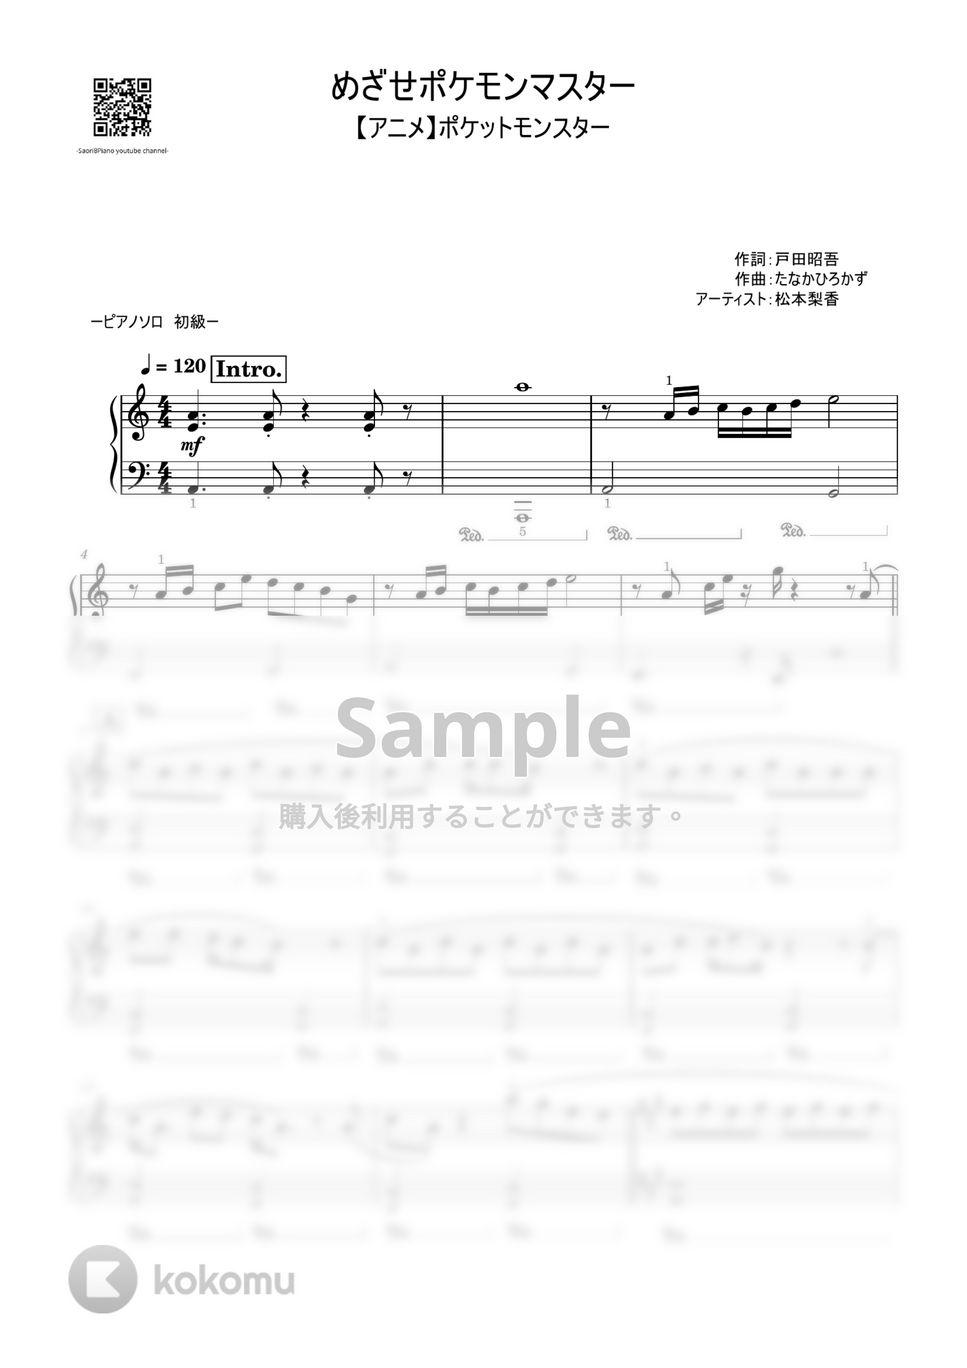 松本梨香 - めざせポケモンマスター (初級レベル) by Saori8Piano